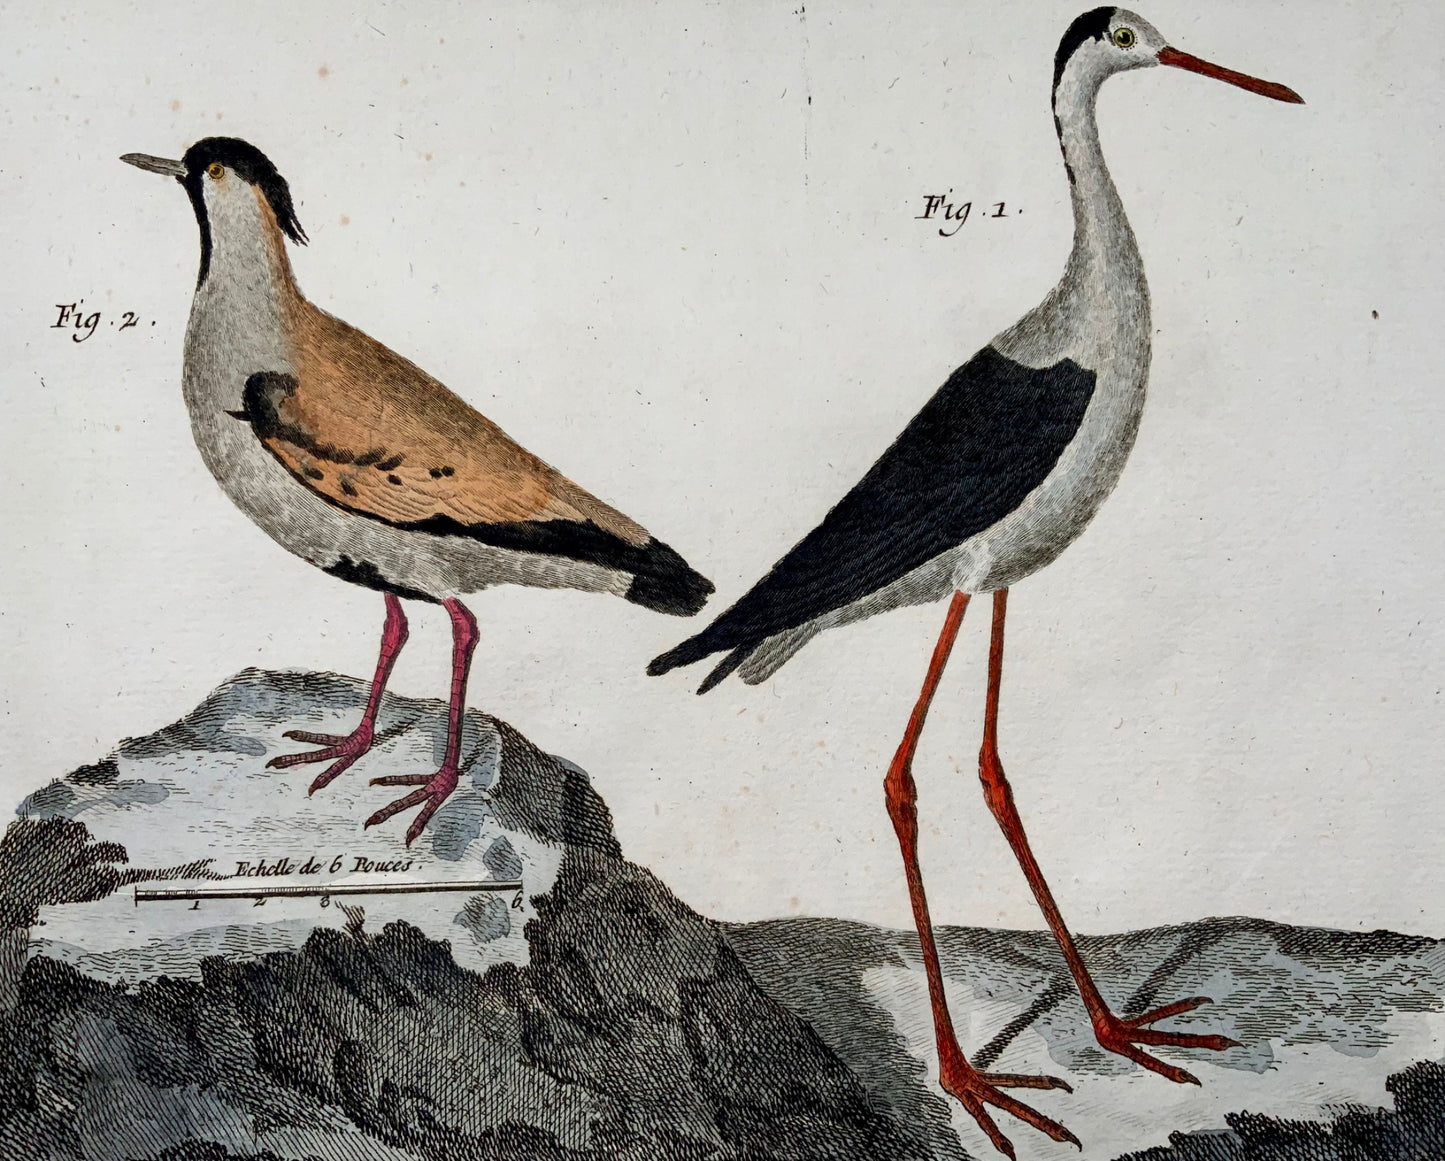 1751 Lawing, Jacana, Plover, ornithology, Martinet, large folio, hand colour